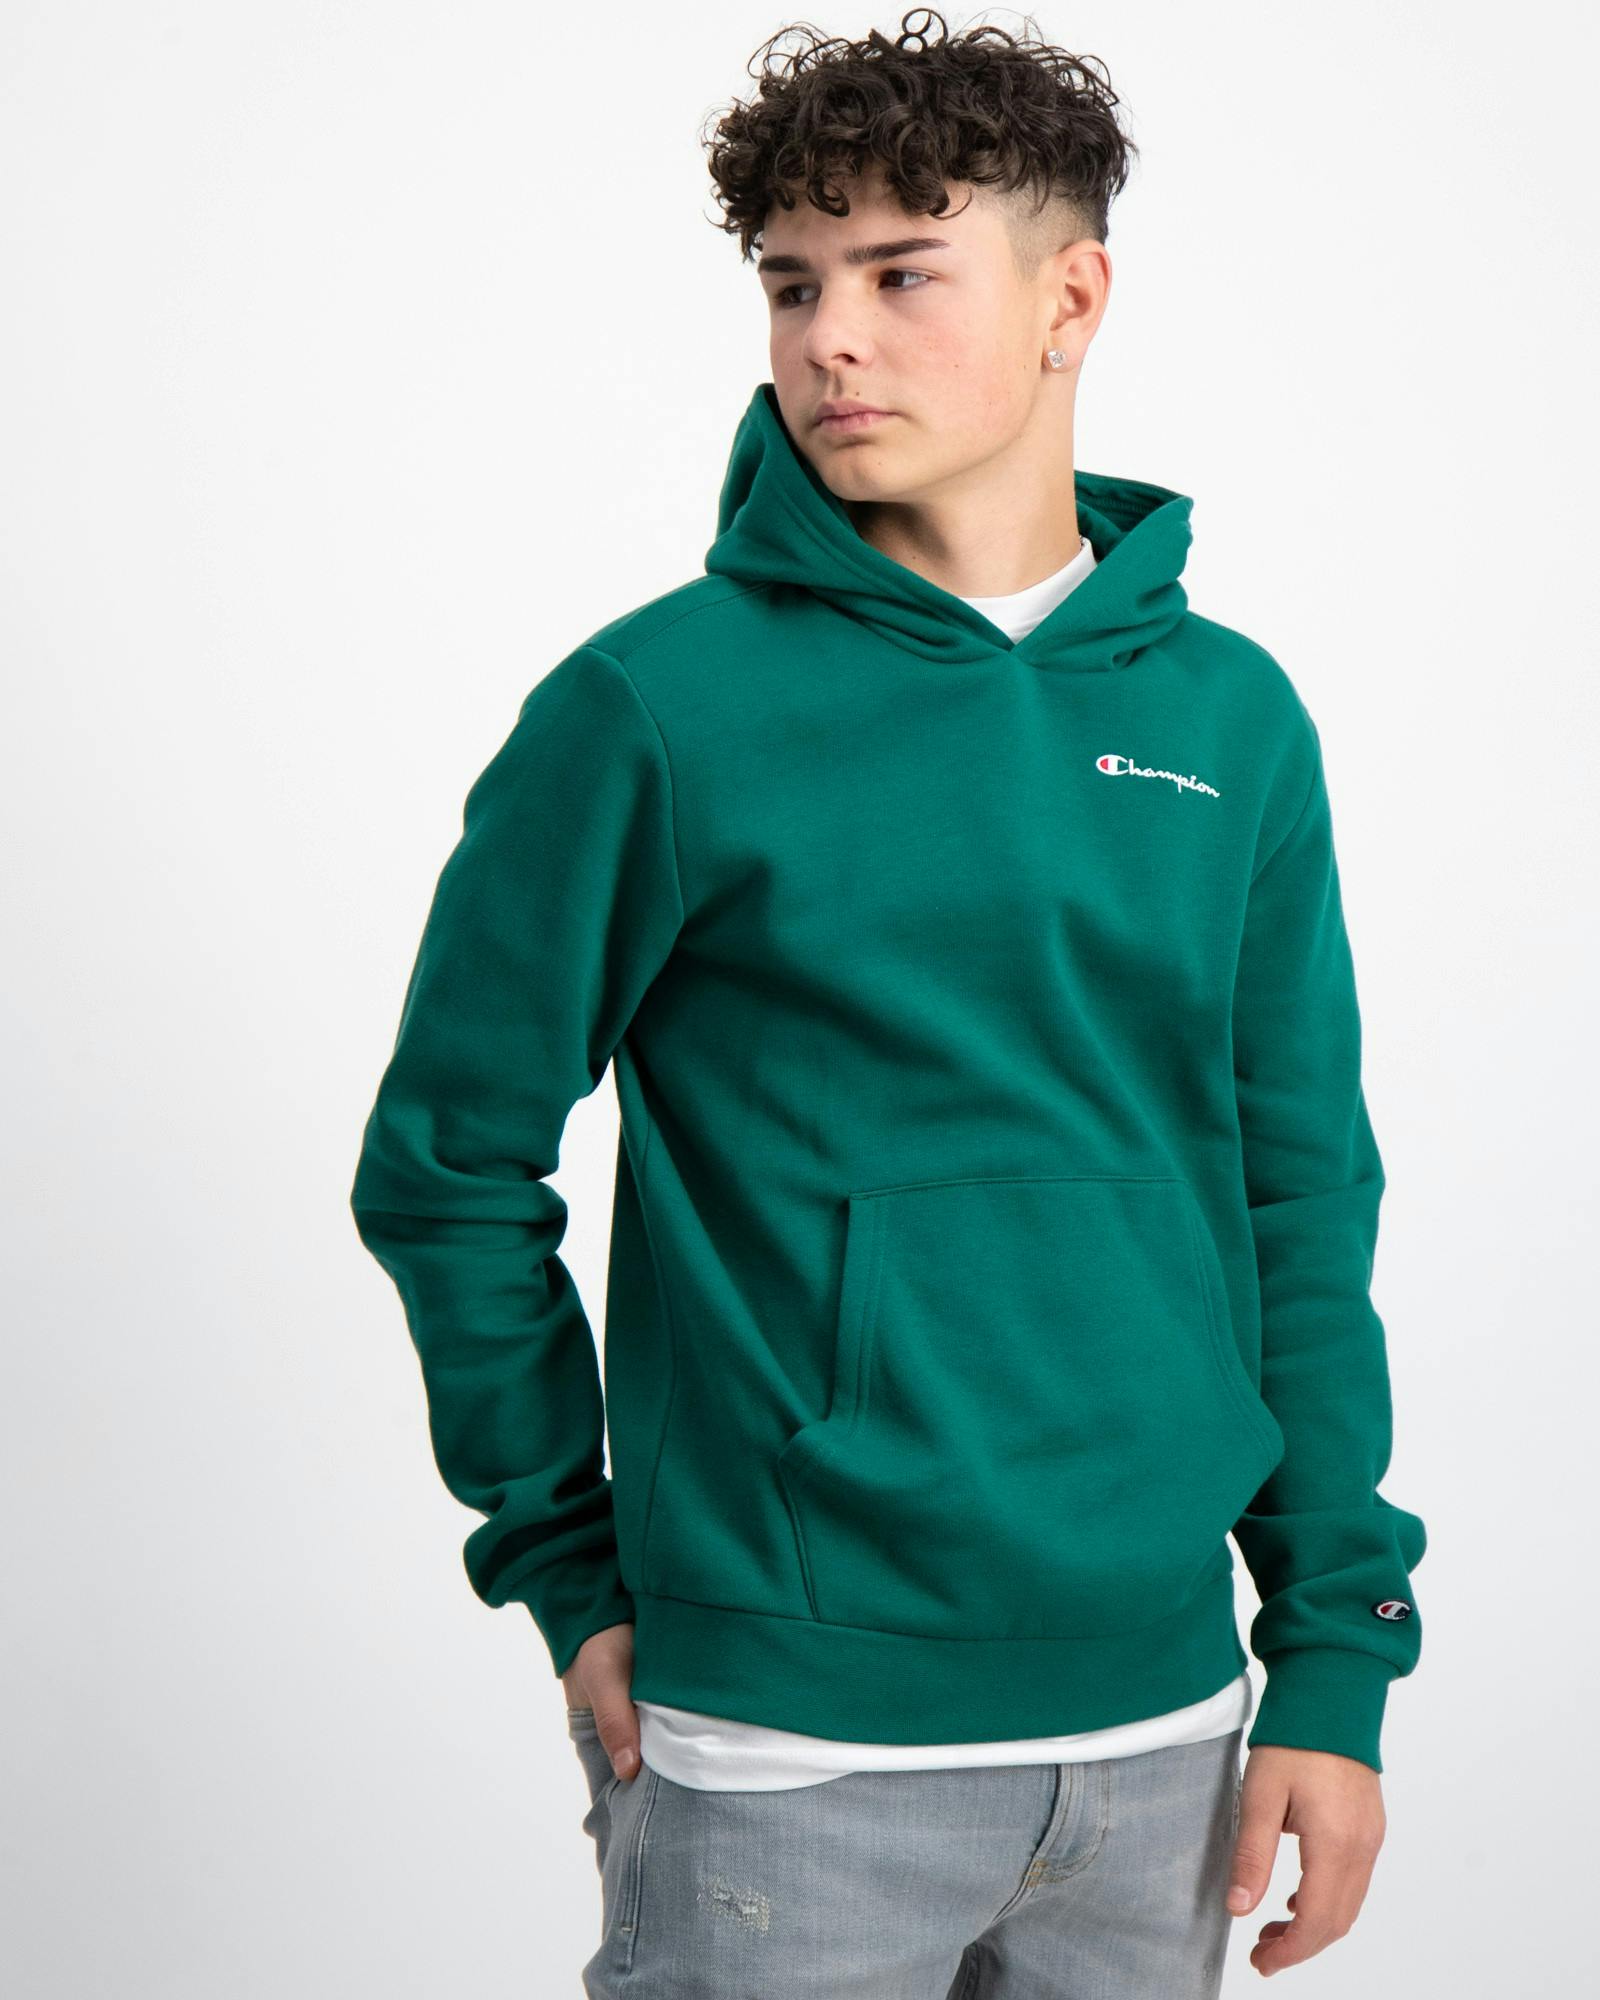 Jungen Brand Sweatshirt Grün Hooded für Kids Store |